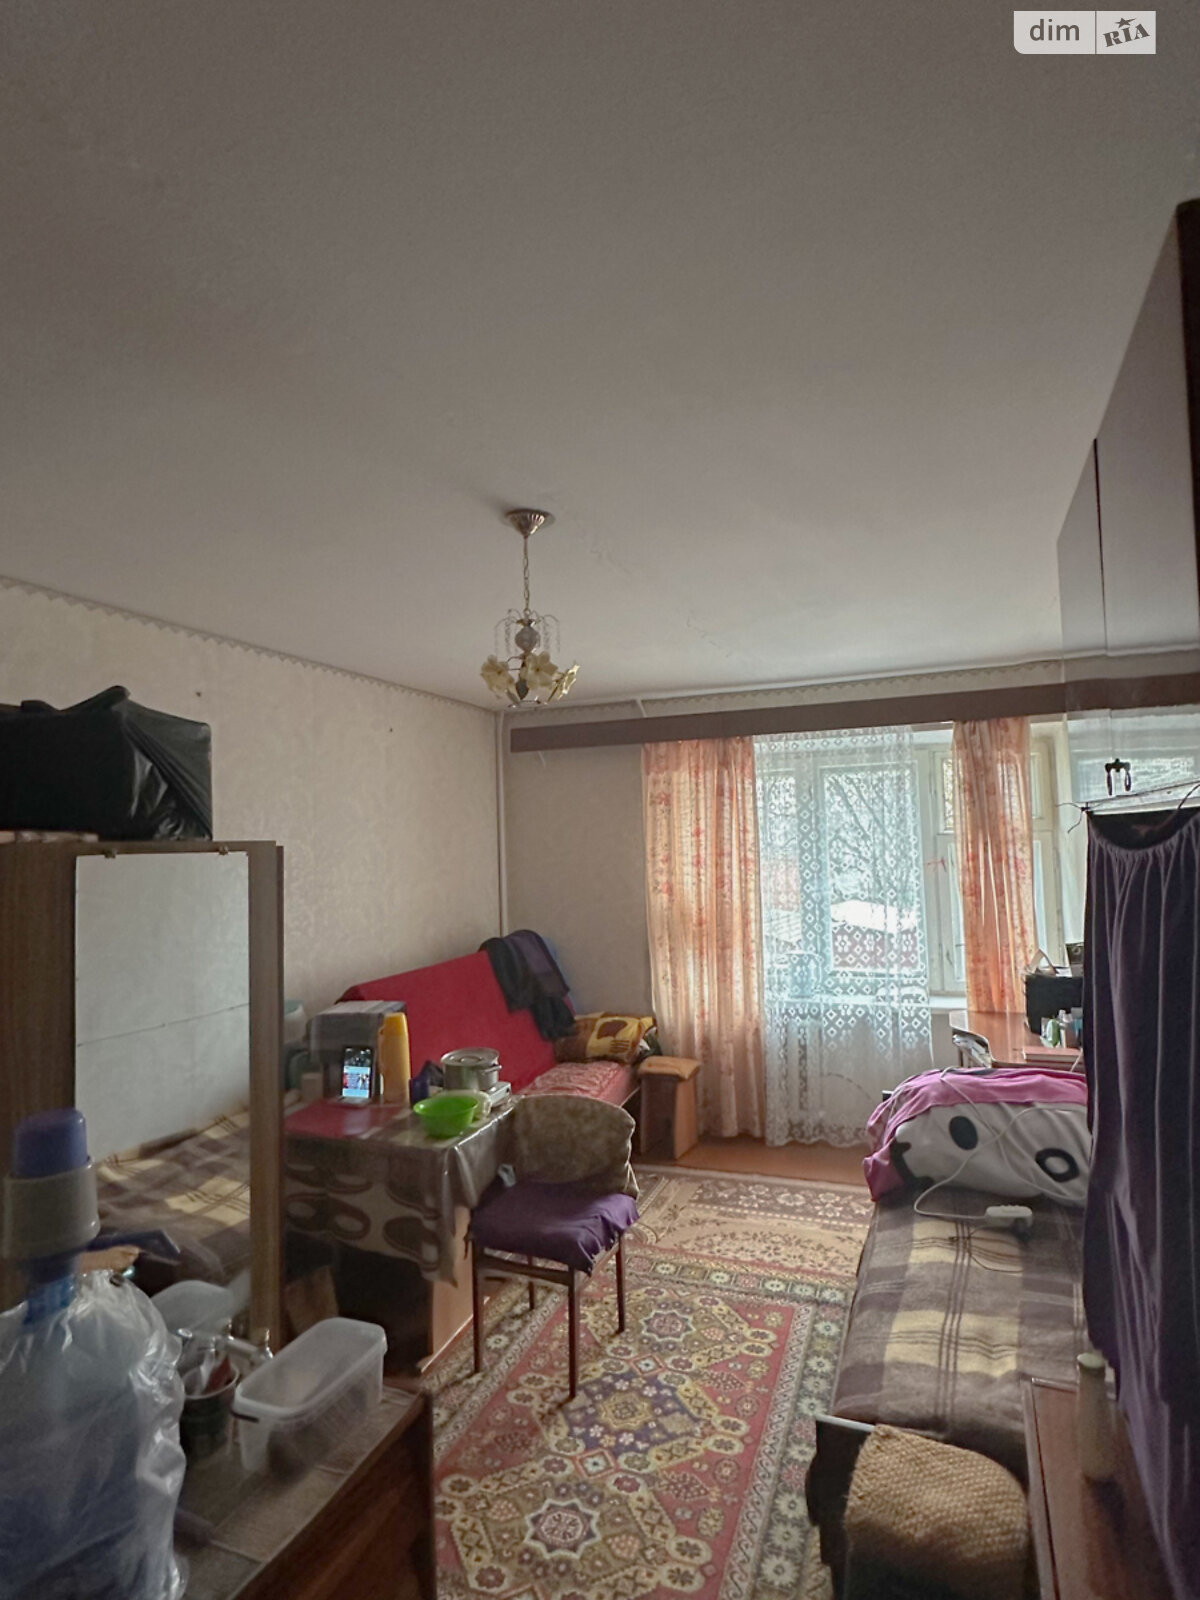 Кімната в Рівному на вул. Льонокомбінатівська 15 в районі Льононкомбінат на продаж фото 1